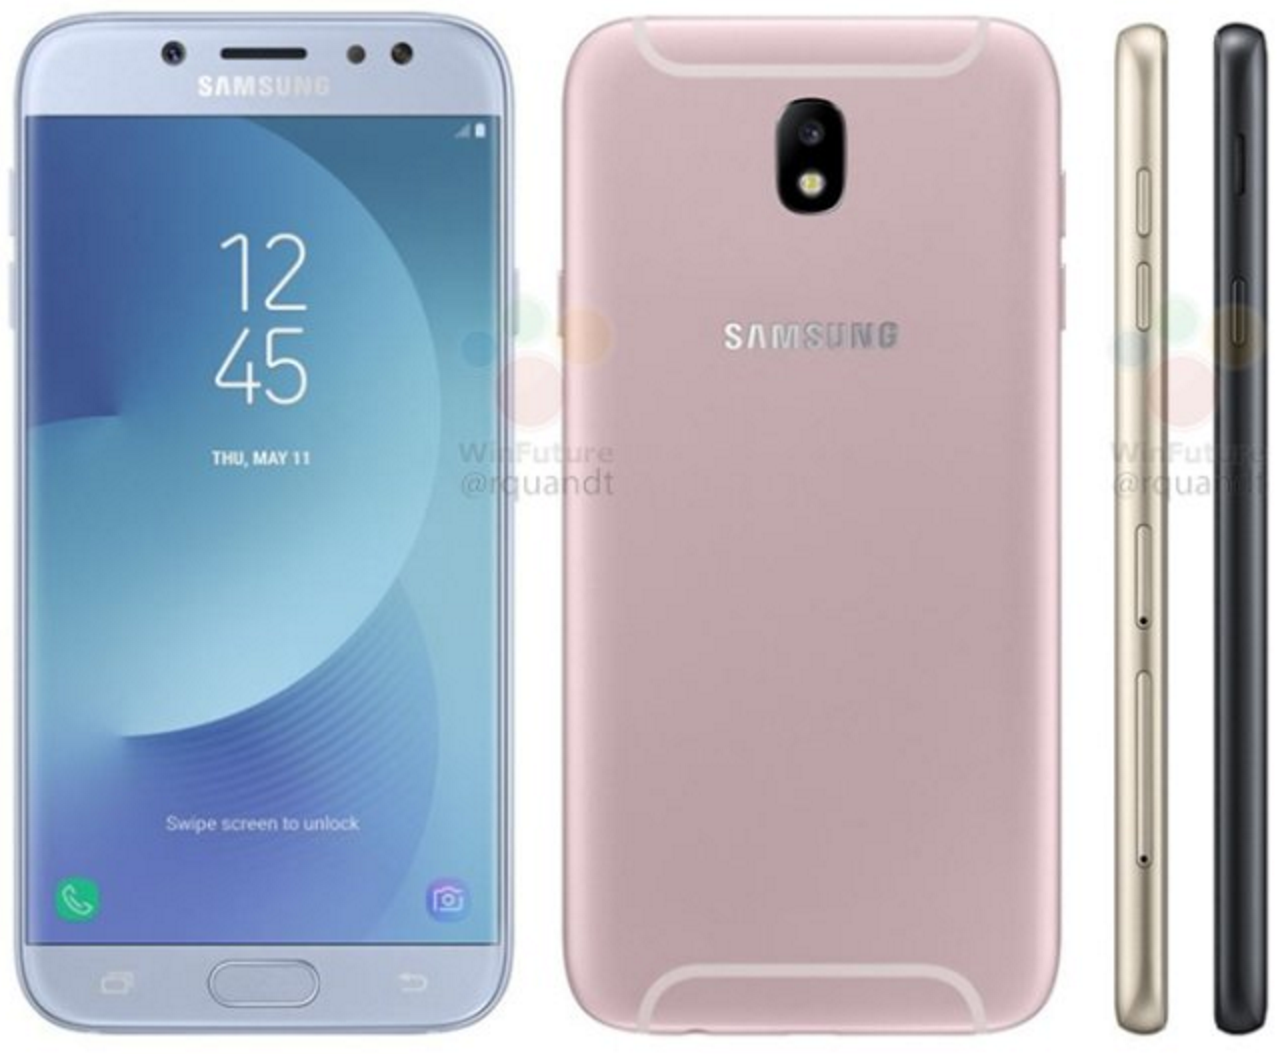 Samsung Galaxy J7 (2017) Leaked Render